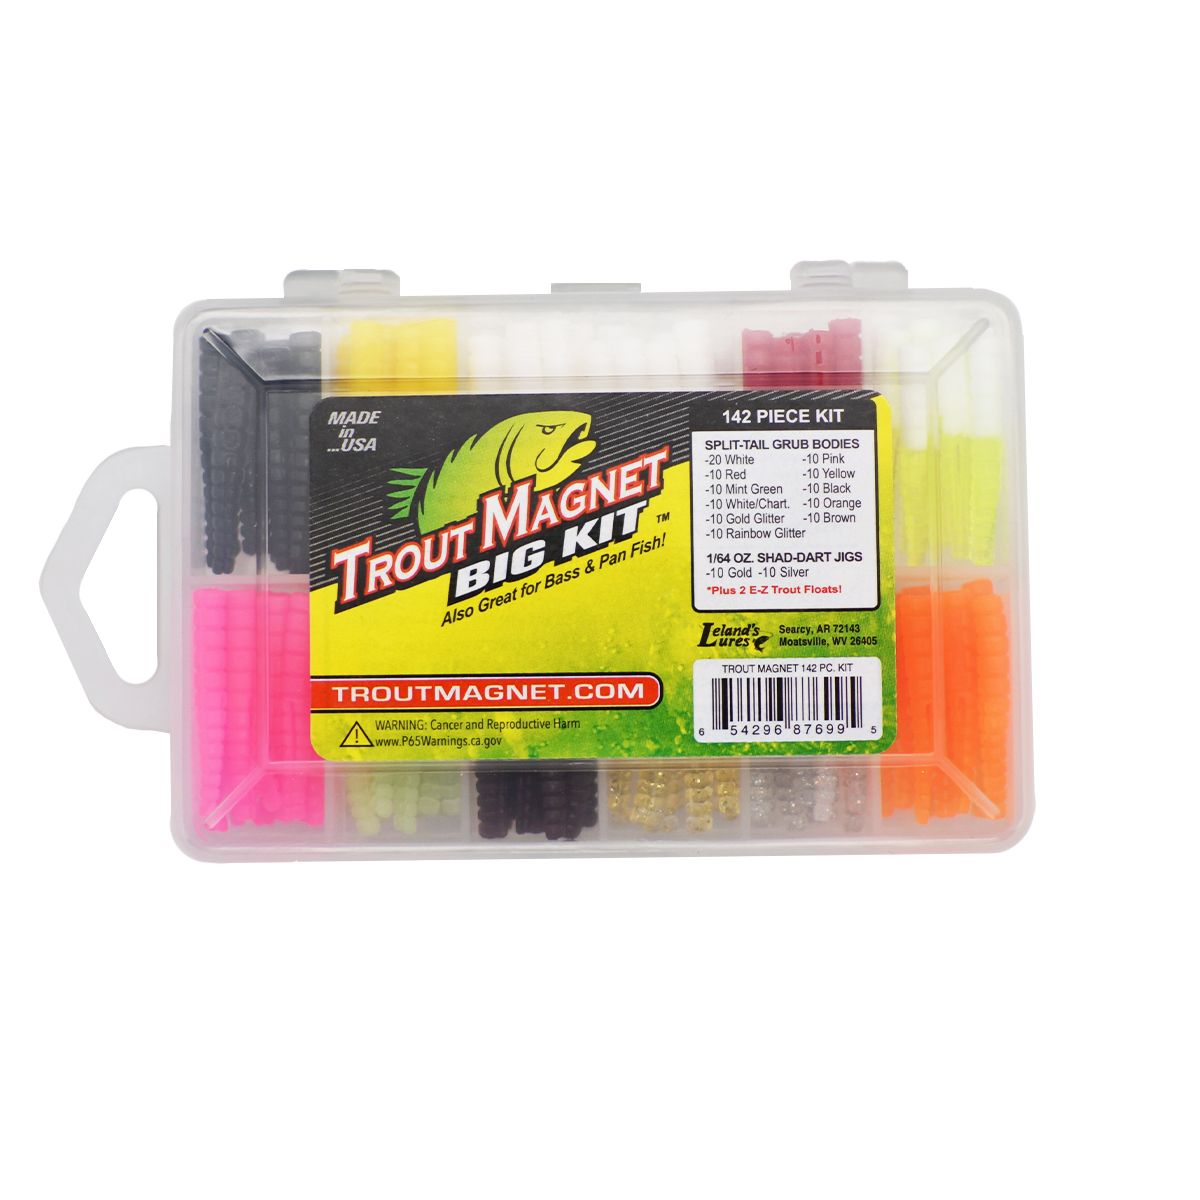 Leland’s Lures Pan Fish Magnet Kit 1/64 oz Fishing Lures 85 Package - 11100Y